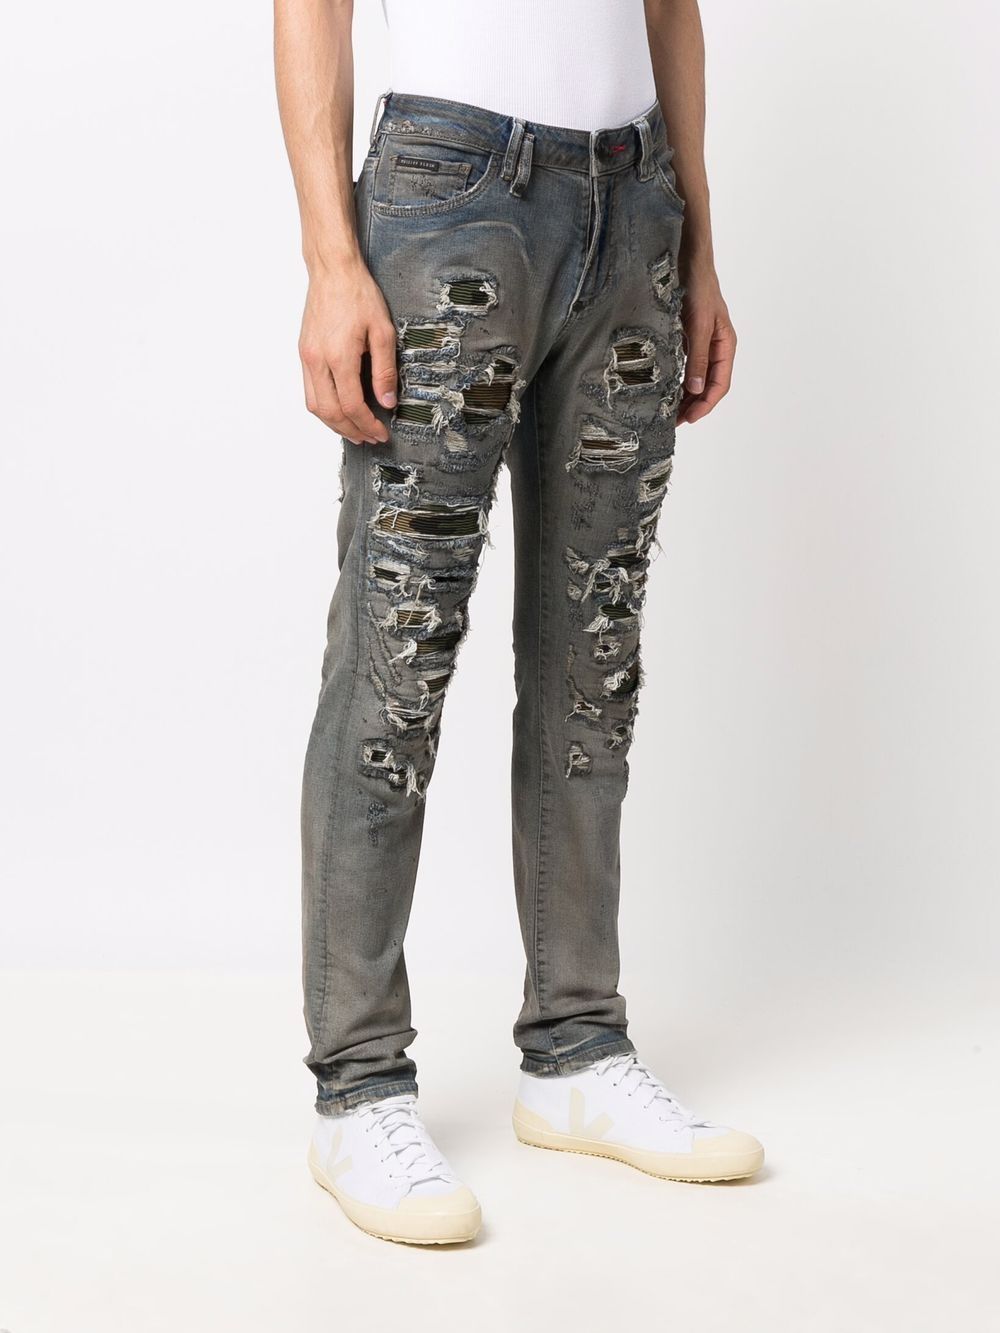 фото Philipp plein джинсы кроя слим с камуфляжным принтом